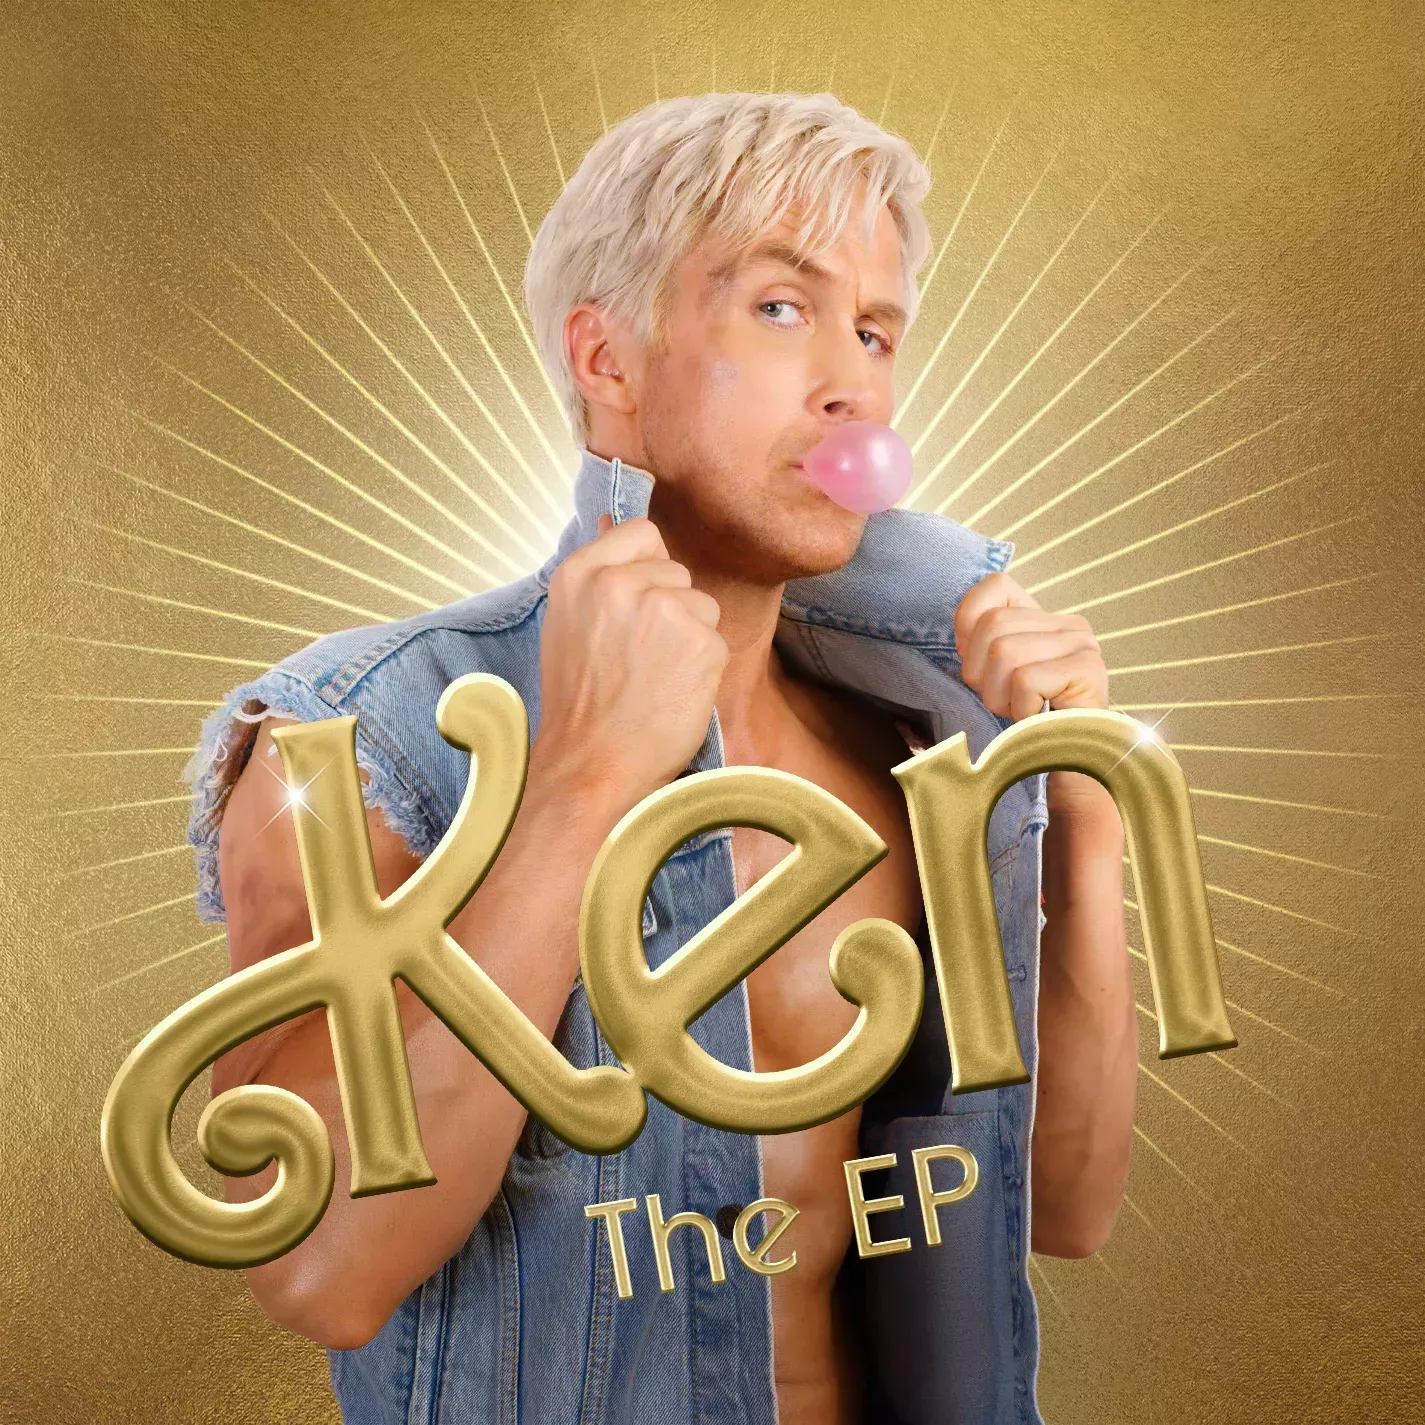 Ryan Gosling lanza 'Ken the EP' 